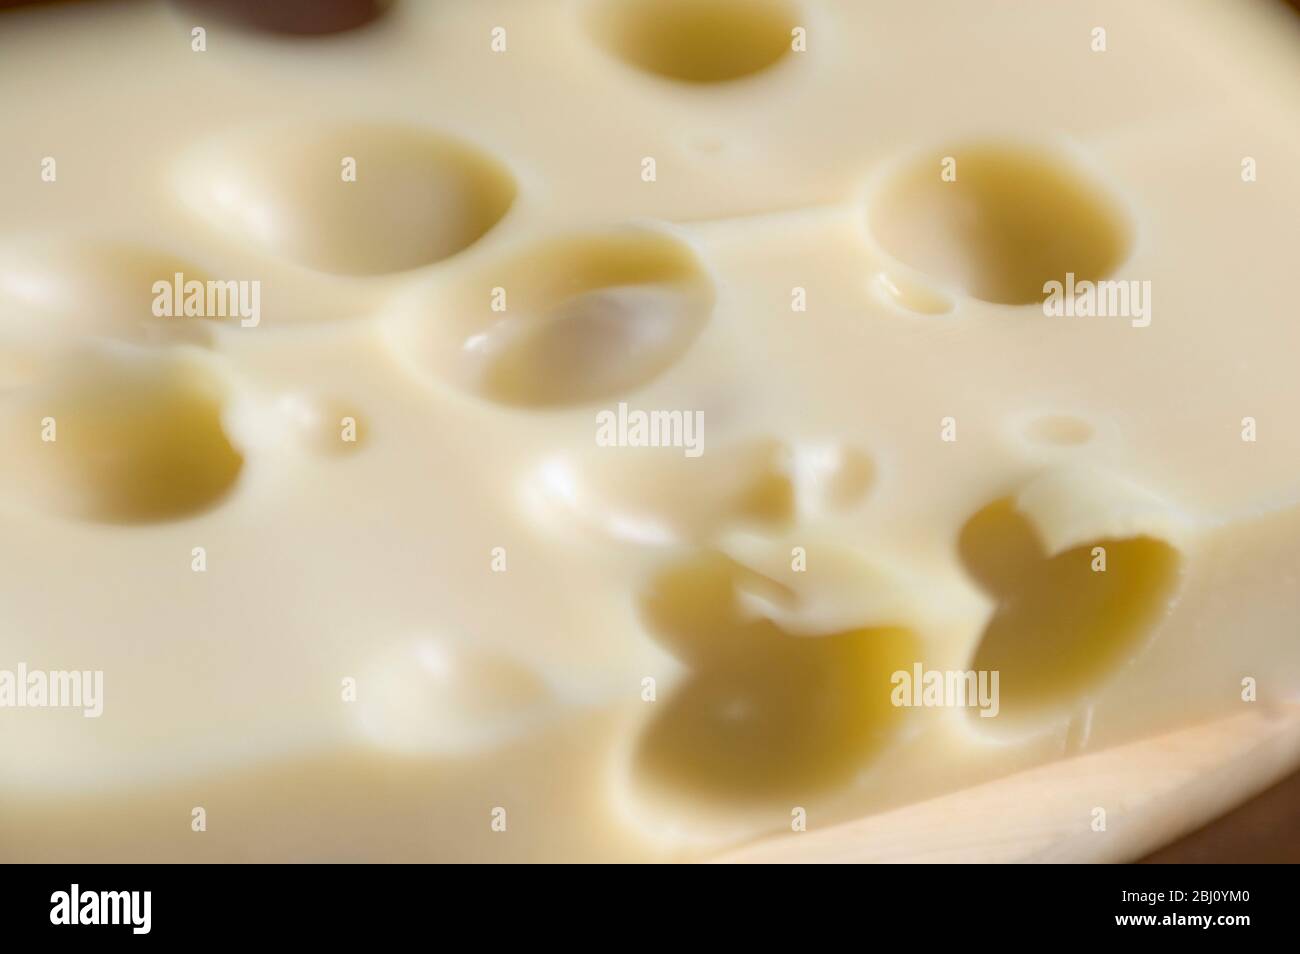 Losa de queso Emmental con lente de lensbabies para un efecto de profundidad de campo corta - Foto de stock